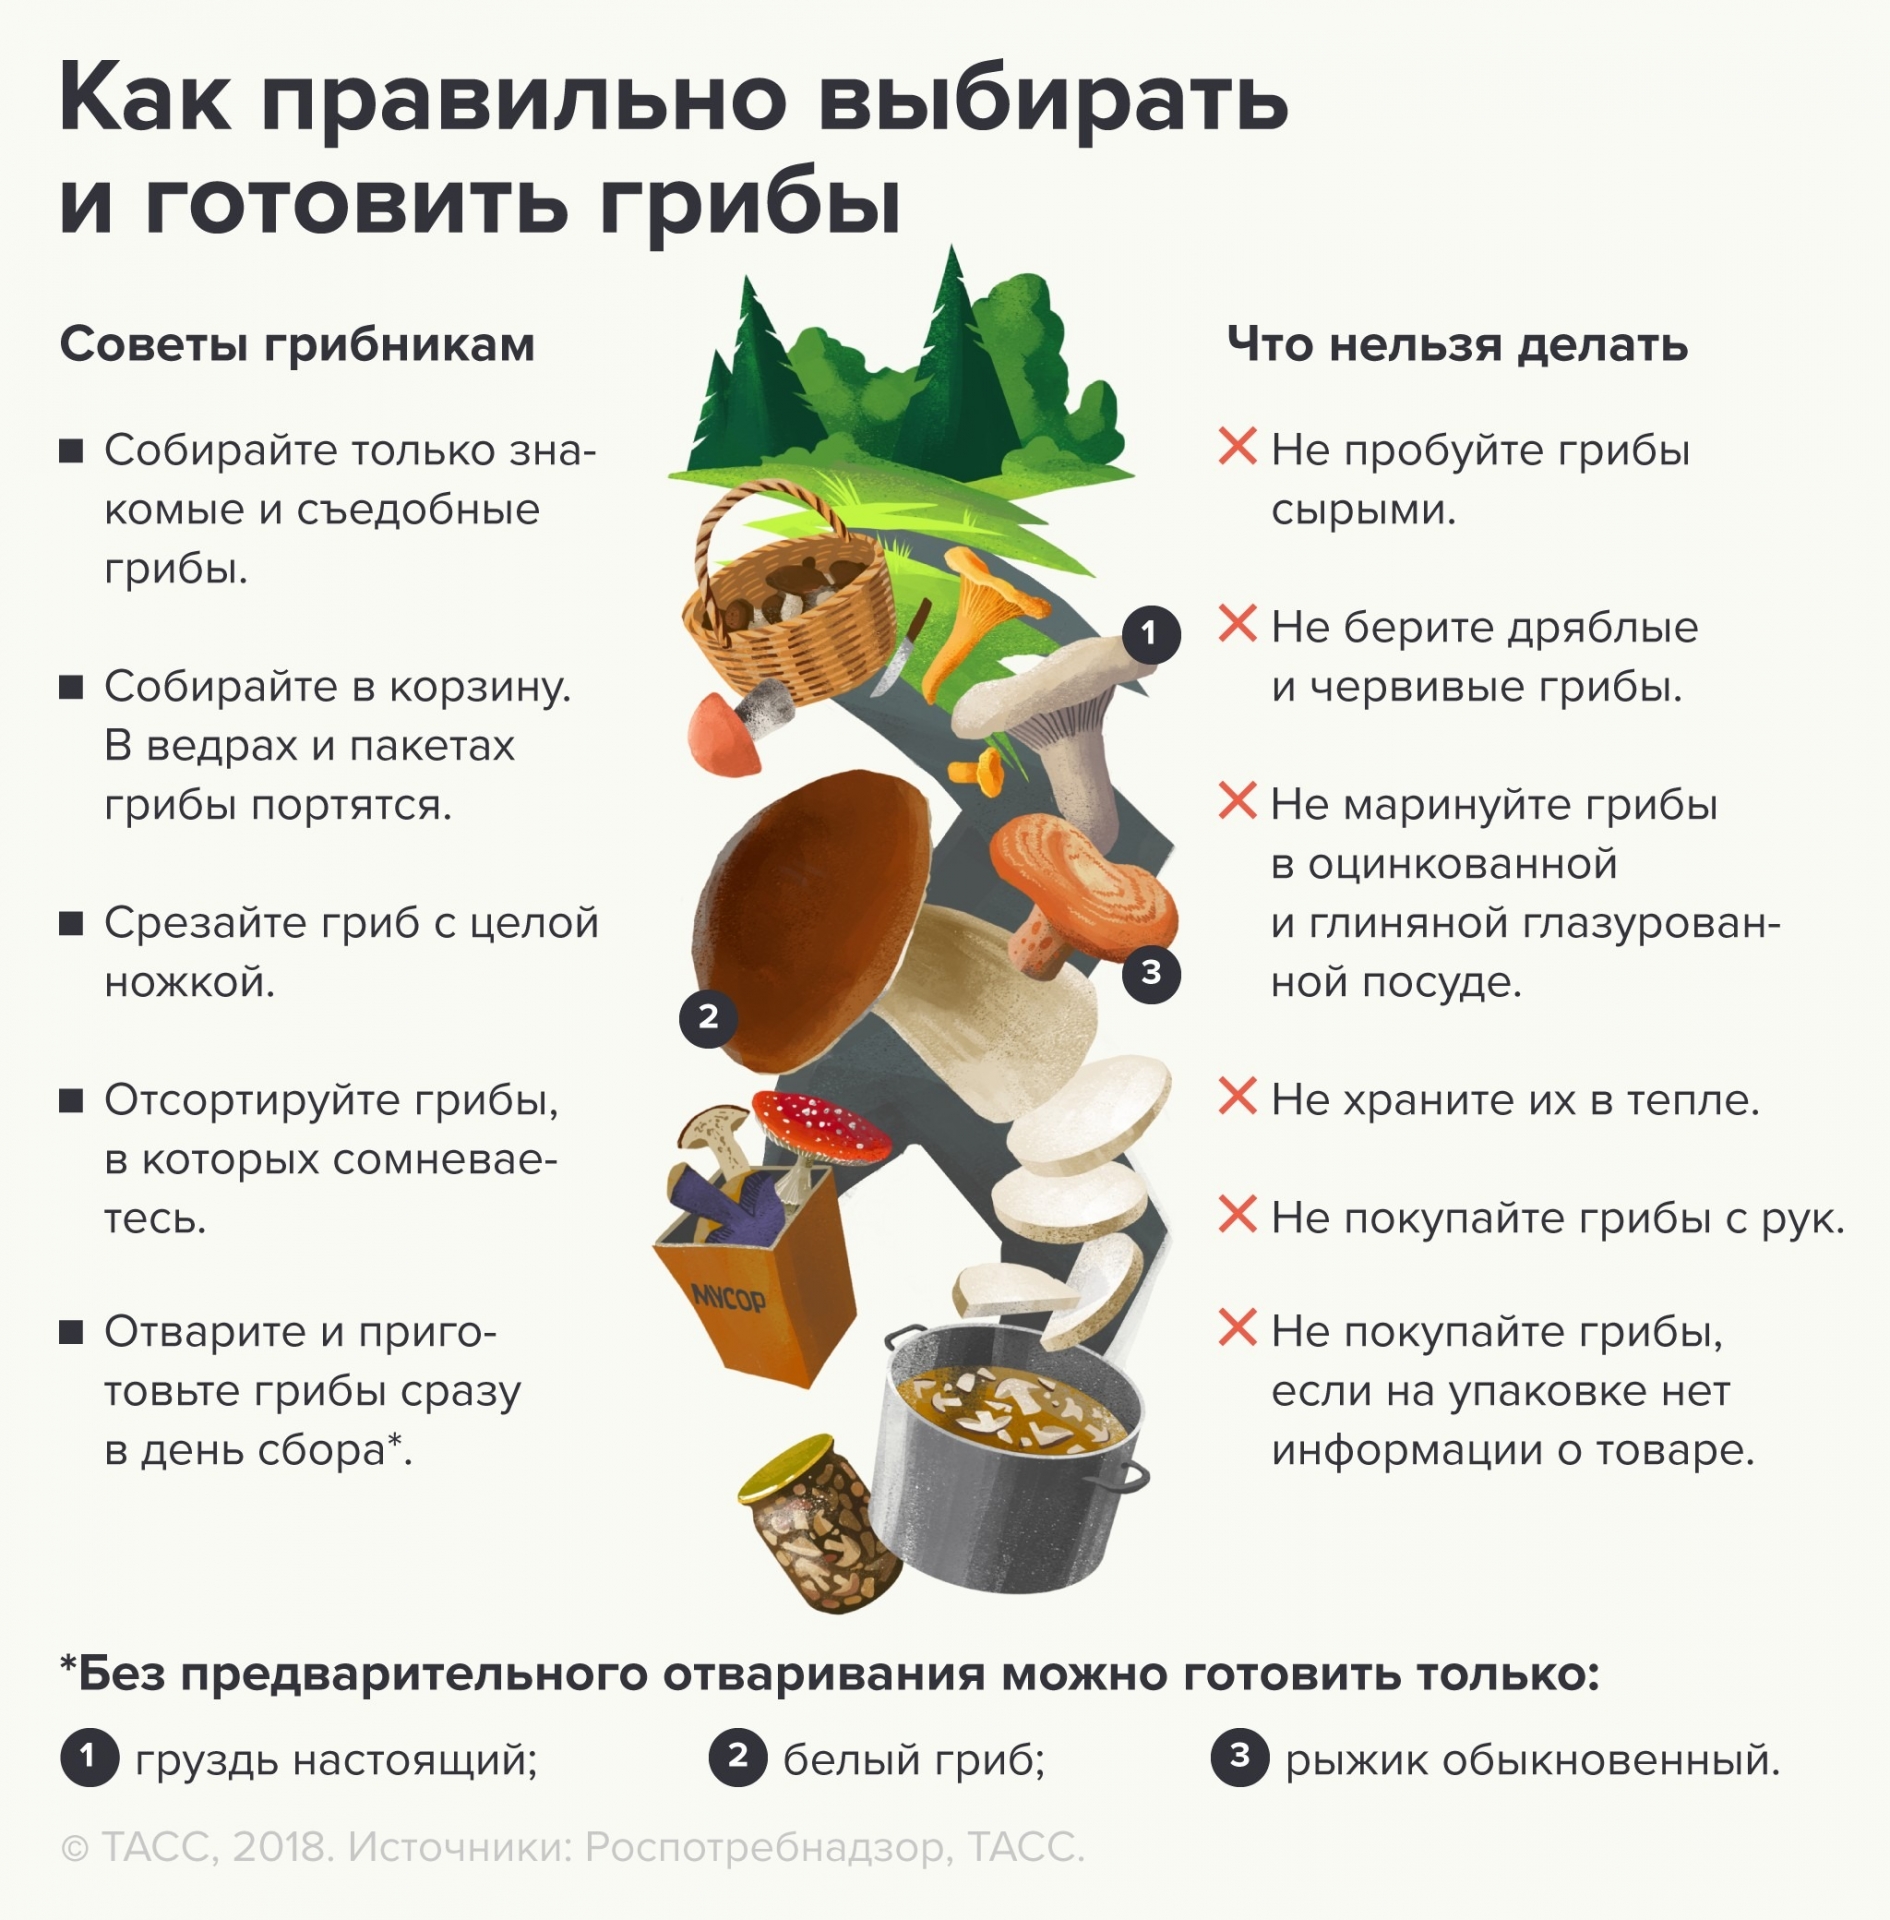 Можно ли в 2020 году собирать грибы и ягоды в лесу: действует ли запрет, что за инициатива на ограничение сбора ягод и грибов в лесу